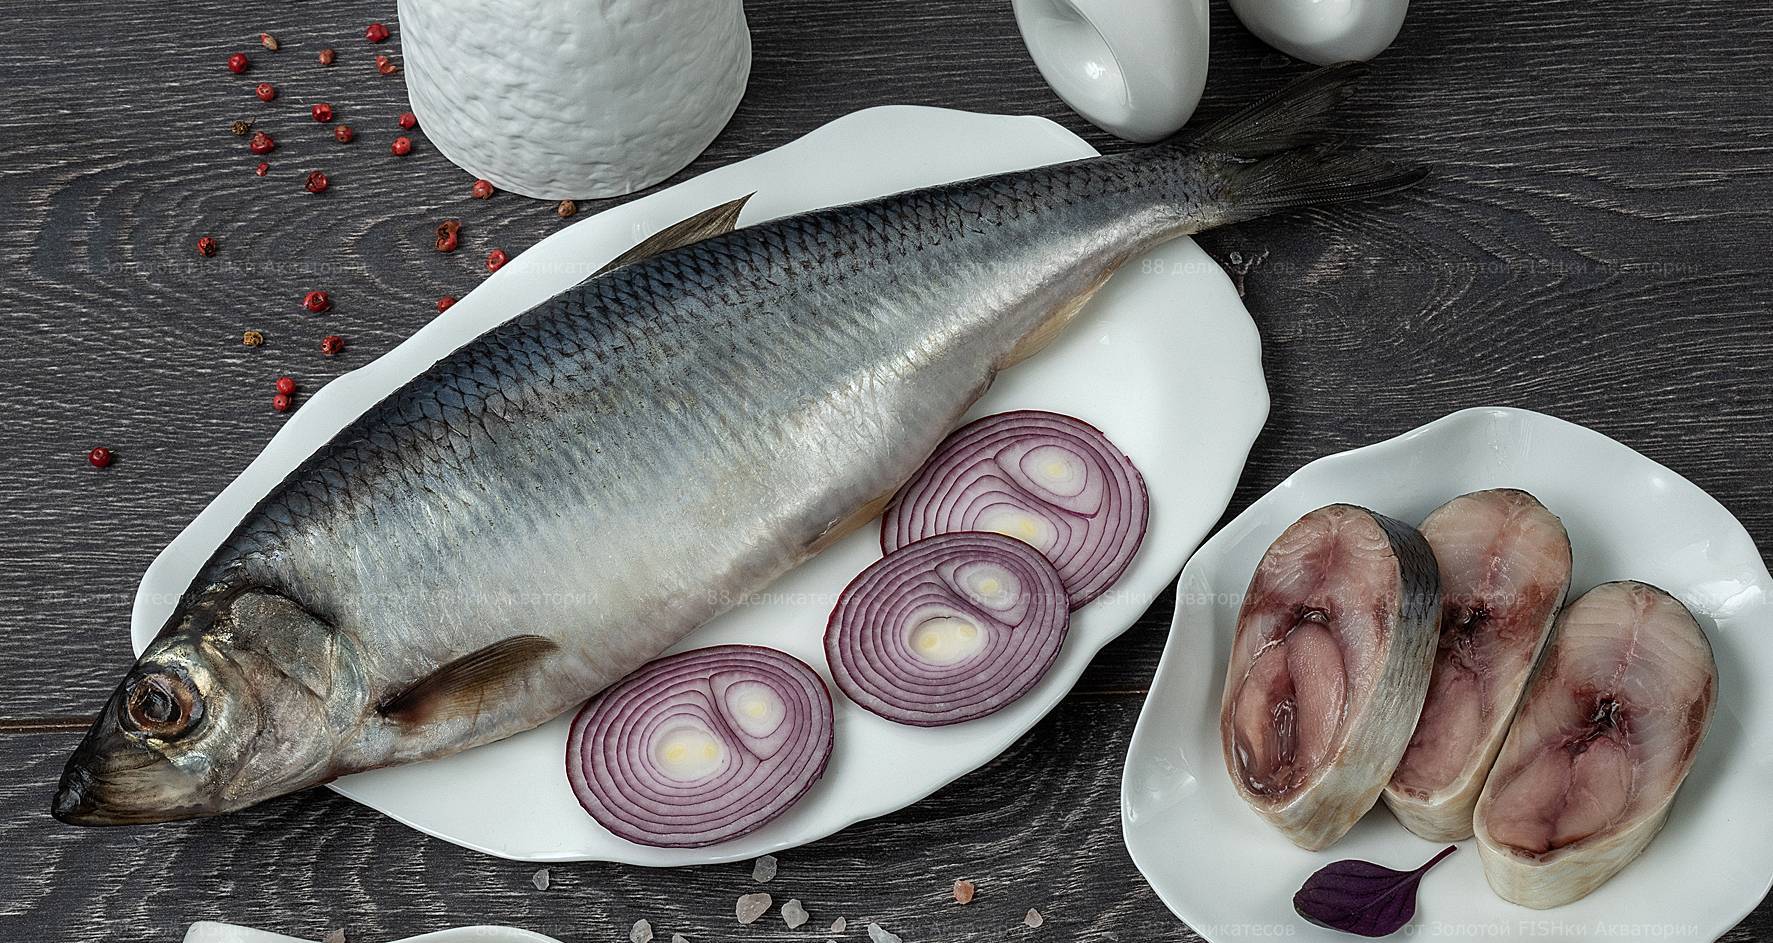 Займ «Бизнес» помог производителям рыбных деликатесов из Находки